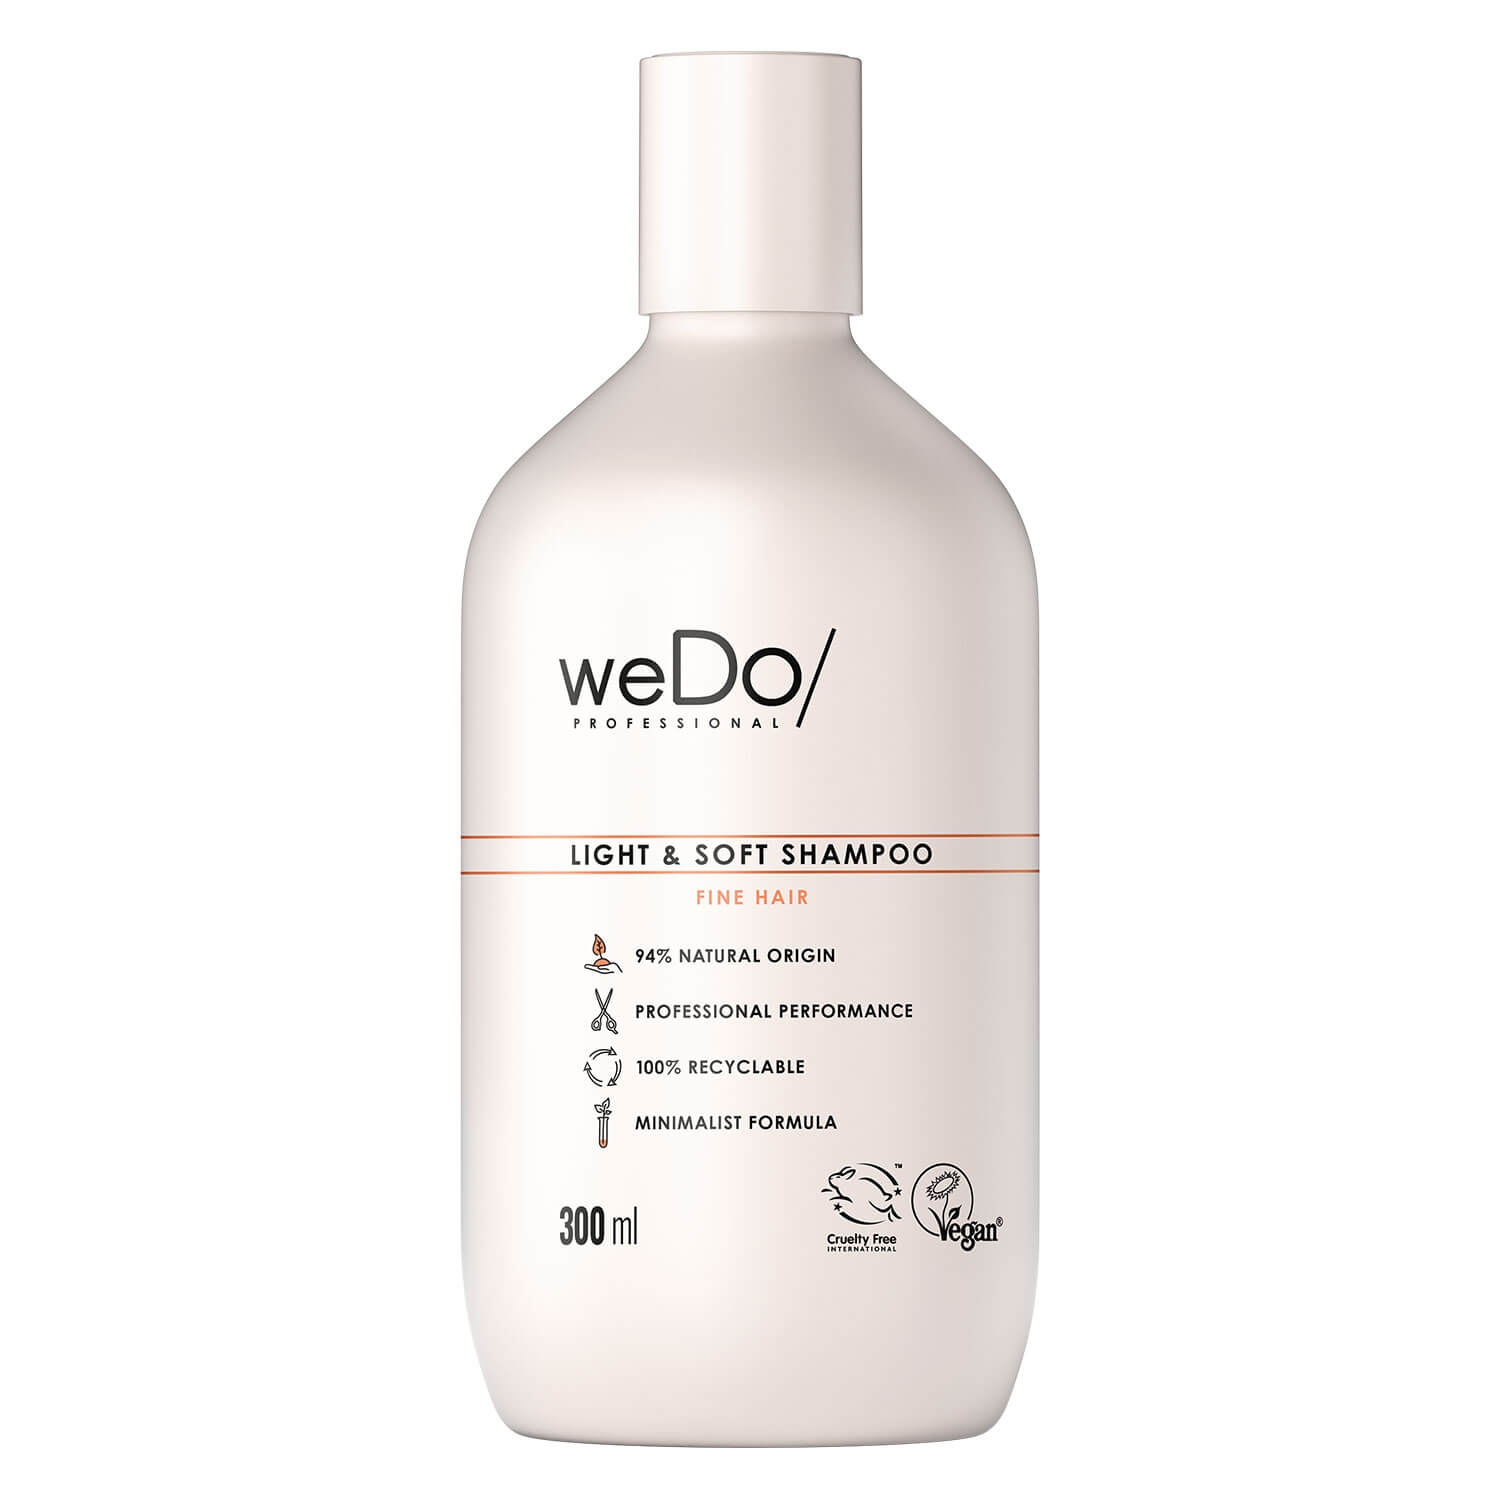 Produktbild von weDo/ - Light & Soft Shampoo